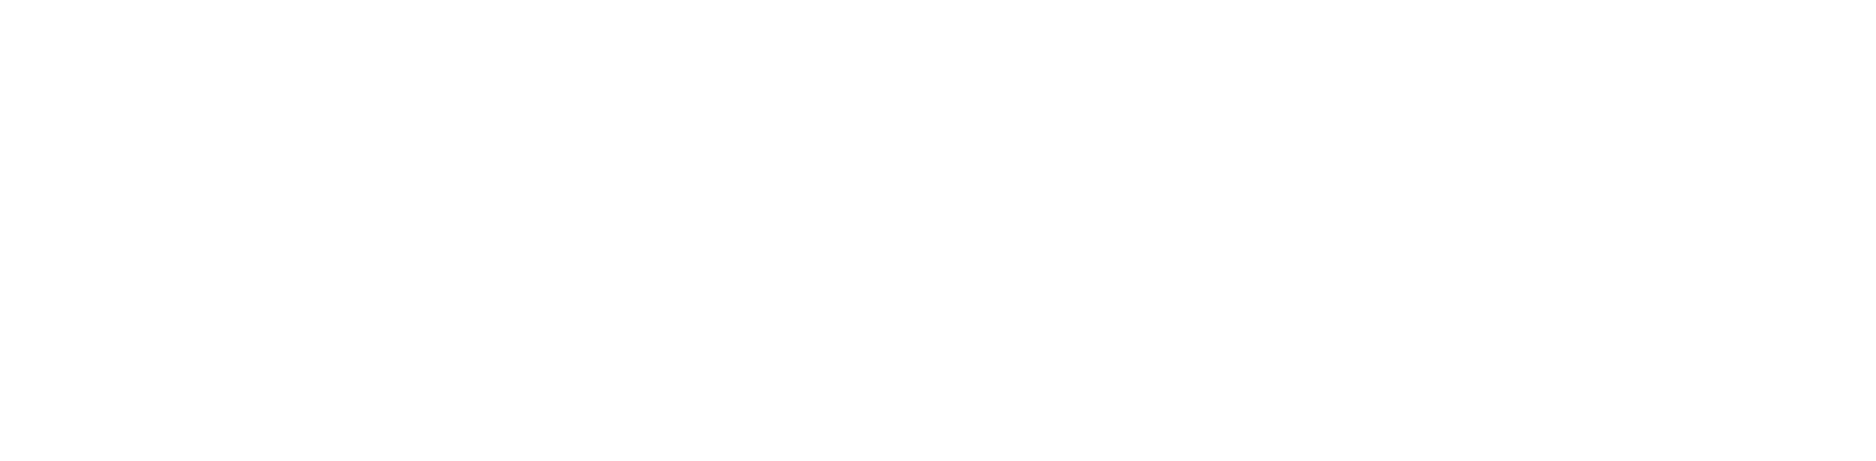 USS Delaware logo